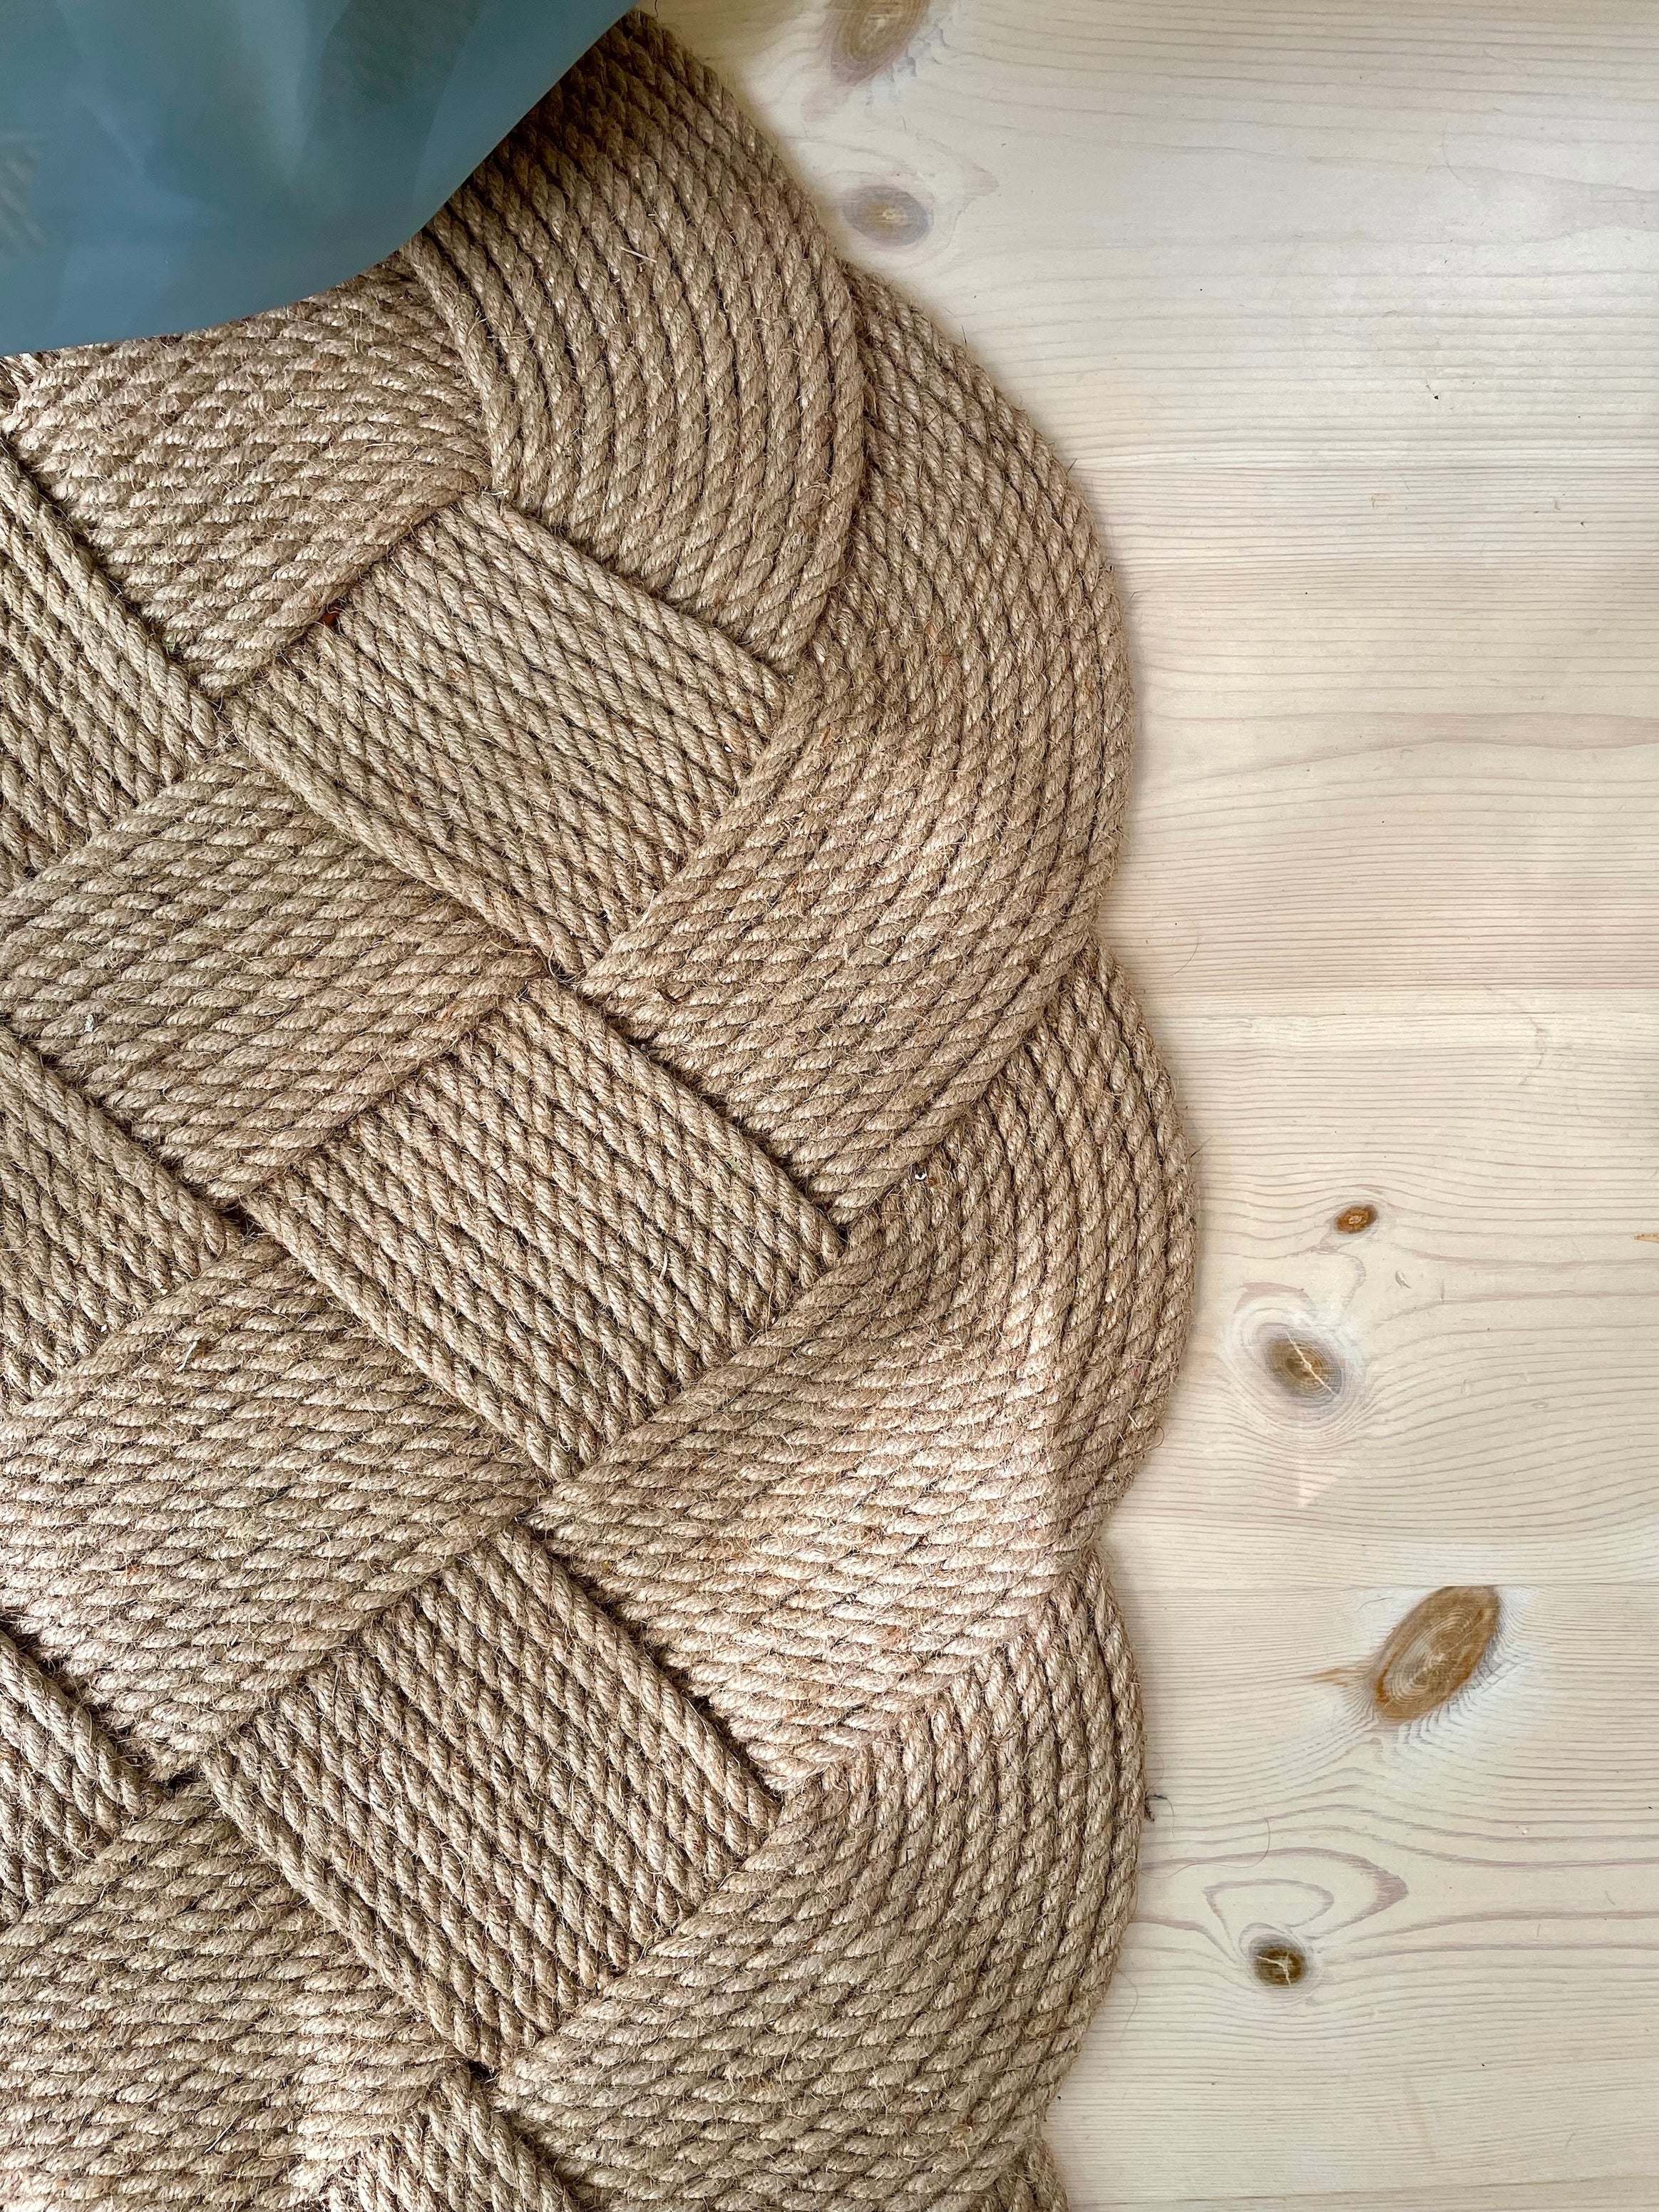 Large hand-woven door mat in jute